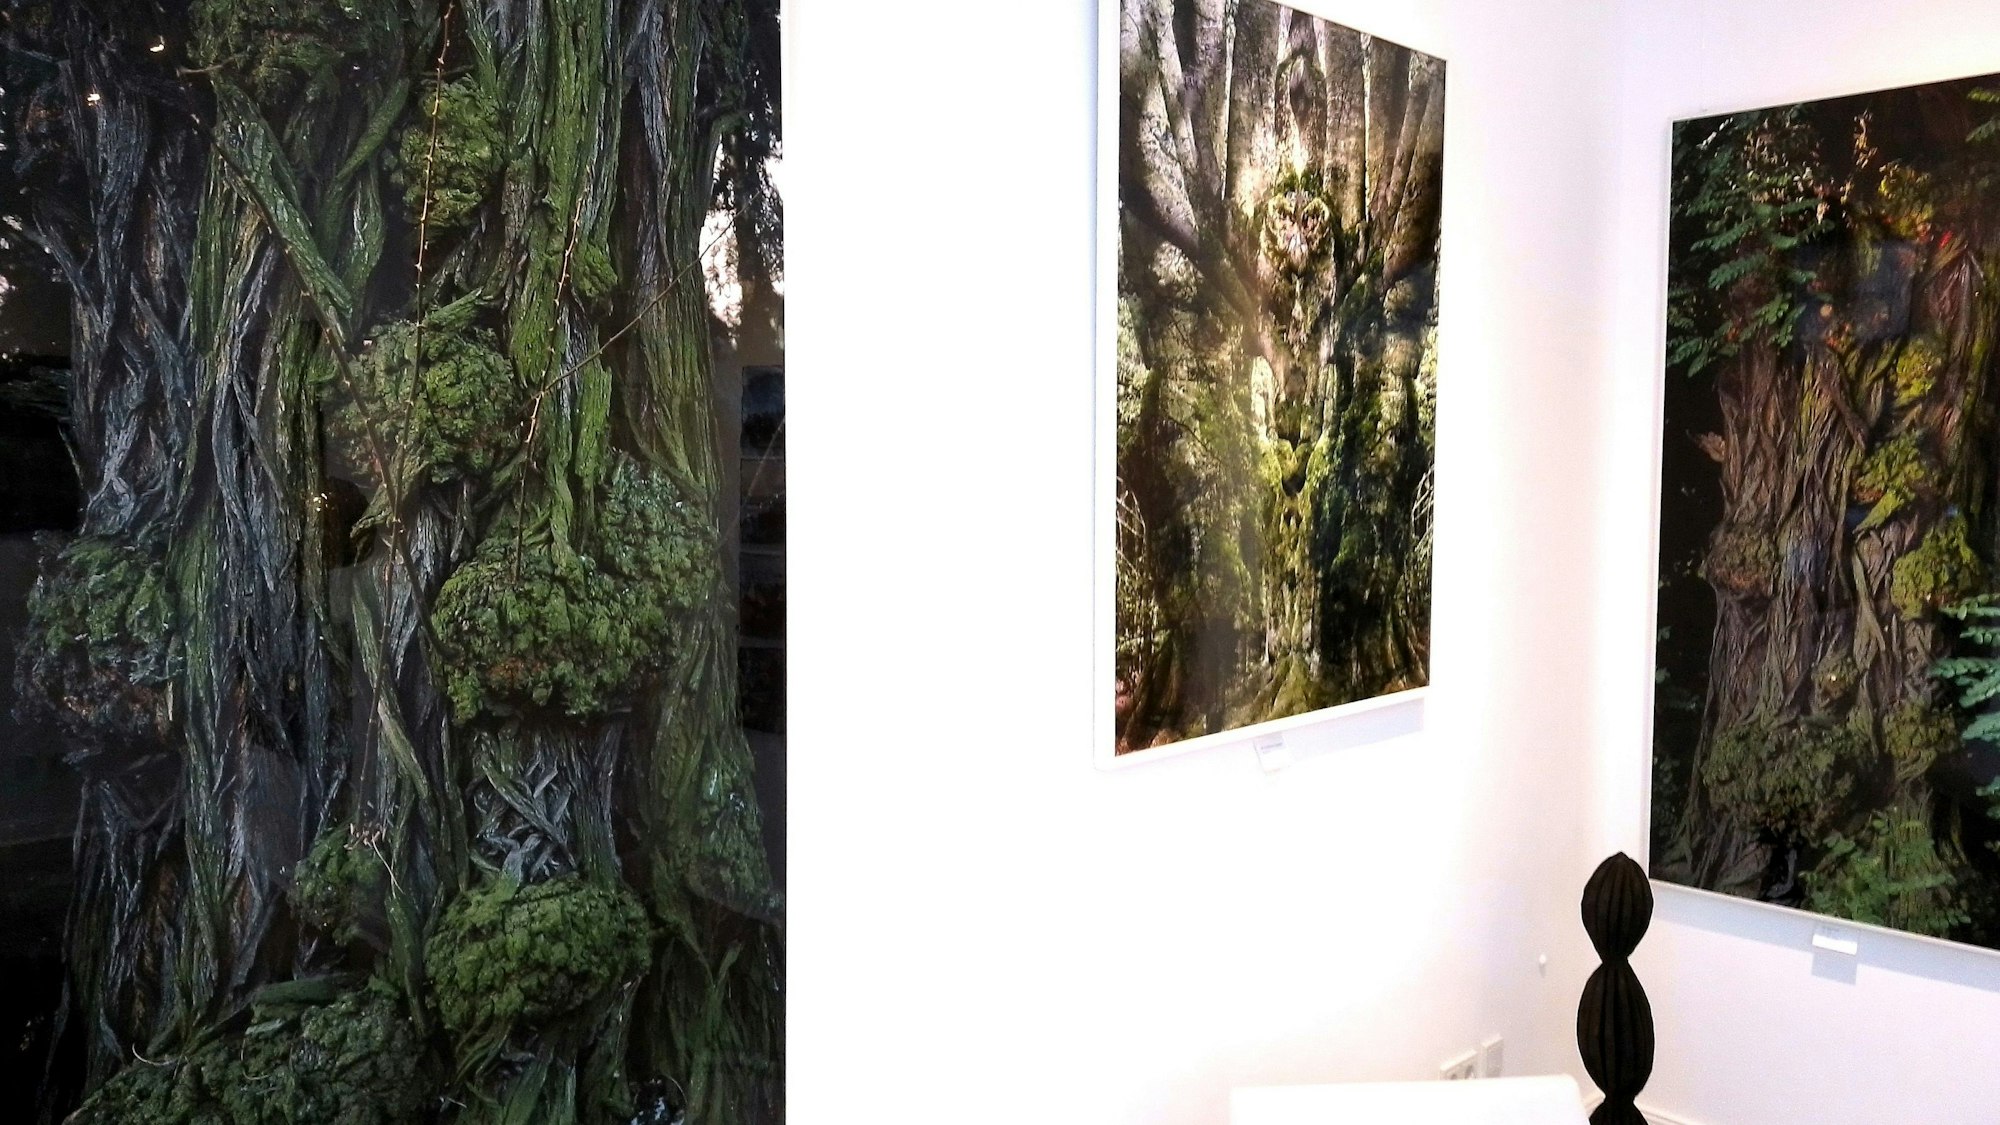 Bilder von Bäumen hängen in einer Kunstgalerie an weißen Wänden.